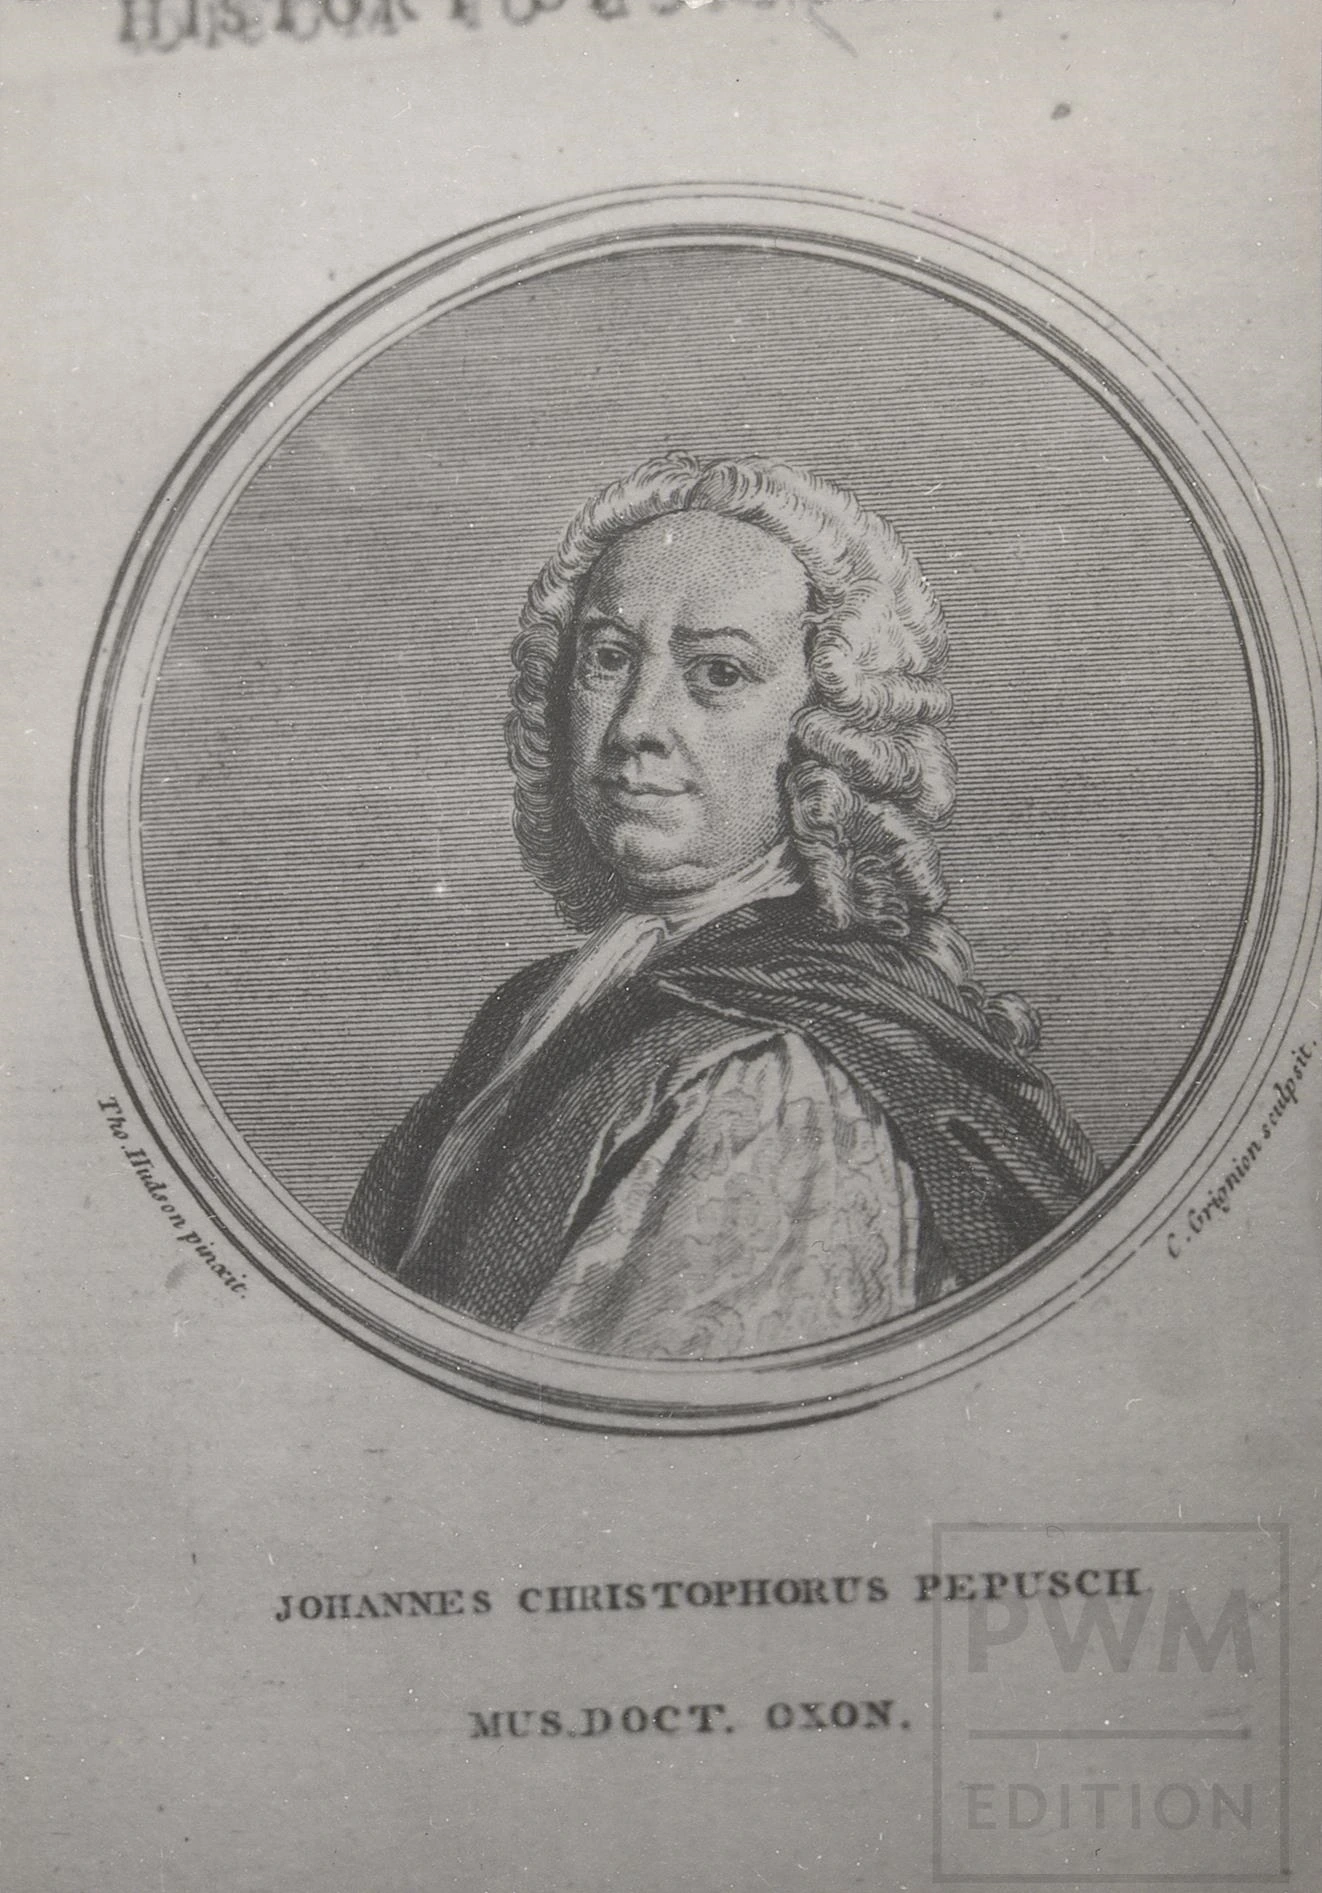 Pepusch, Johann Christoph